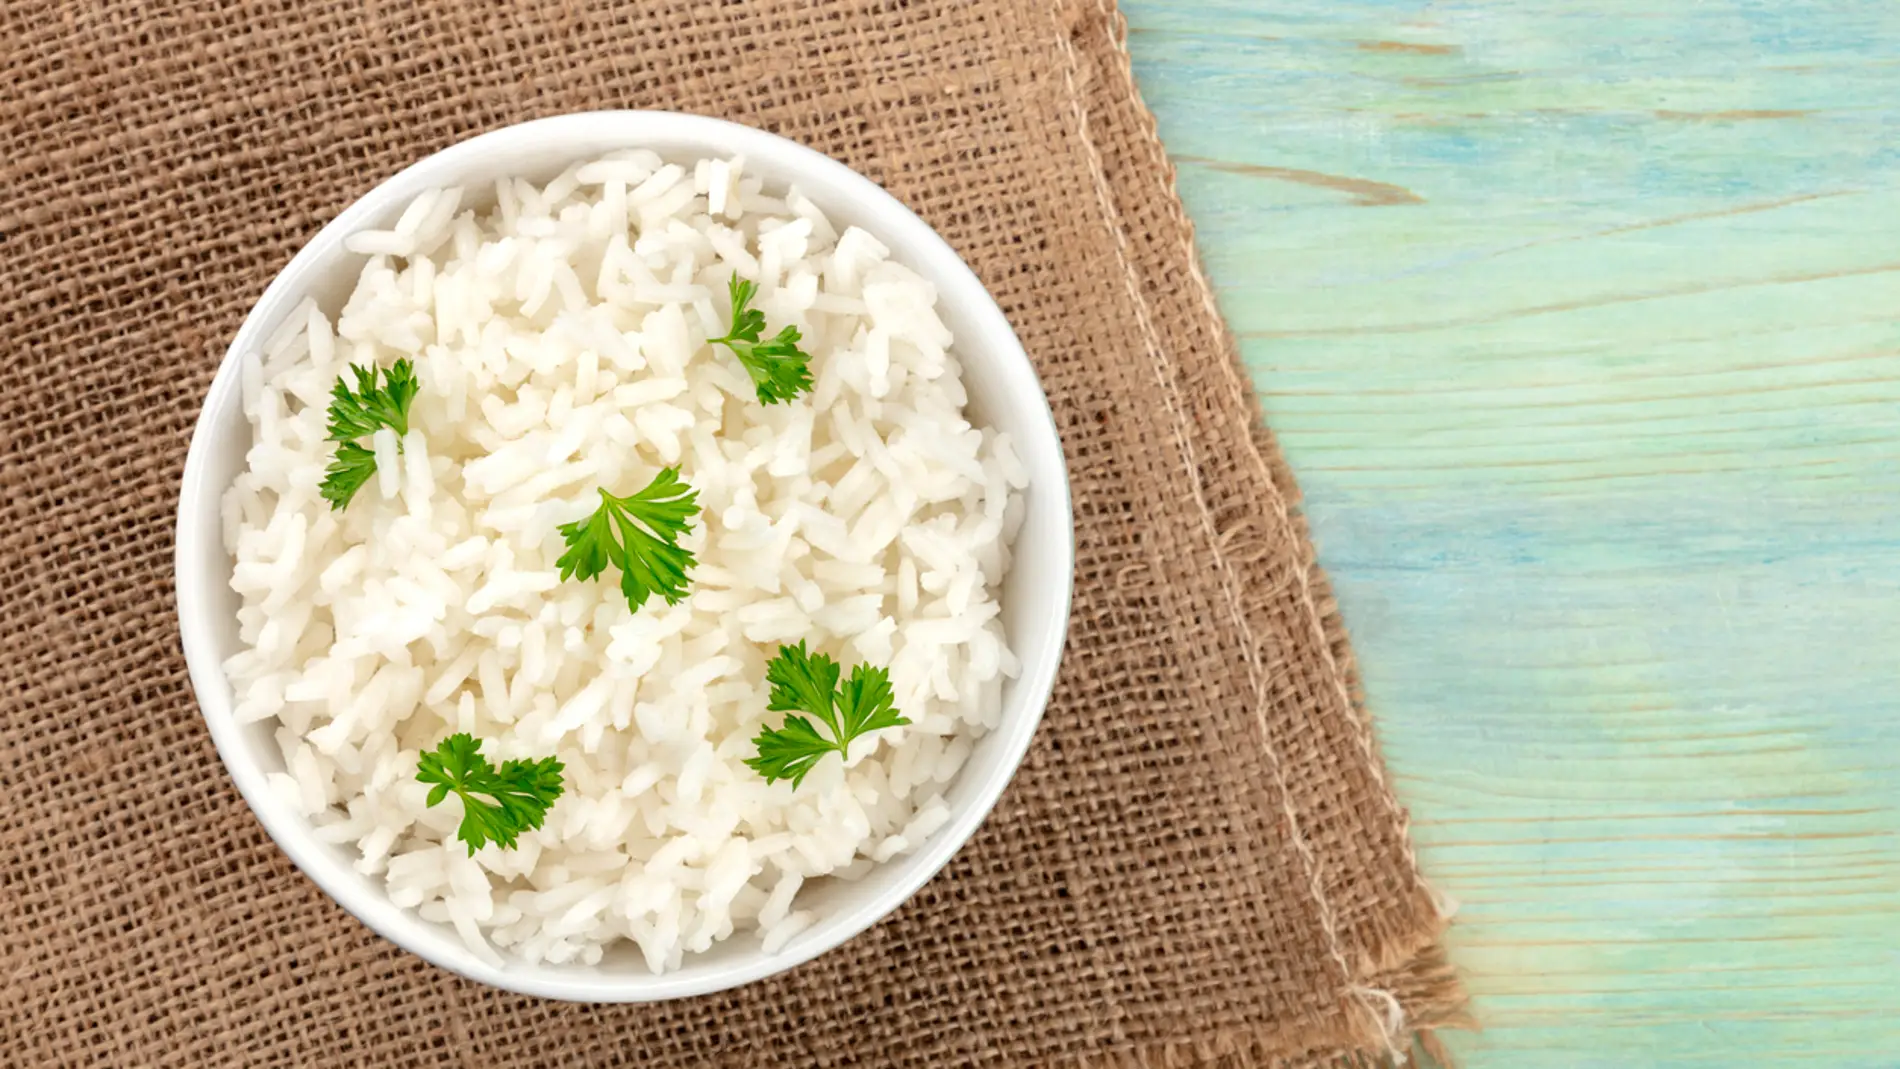 Calorías arroz integral cocido - Beneficios y recomendaciones